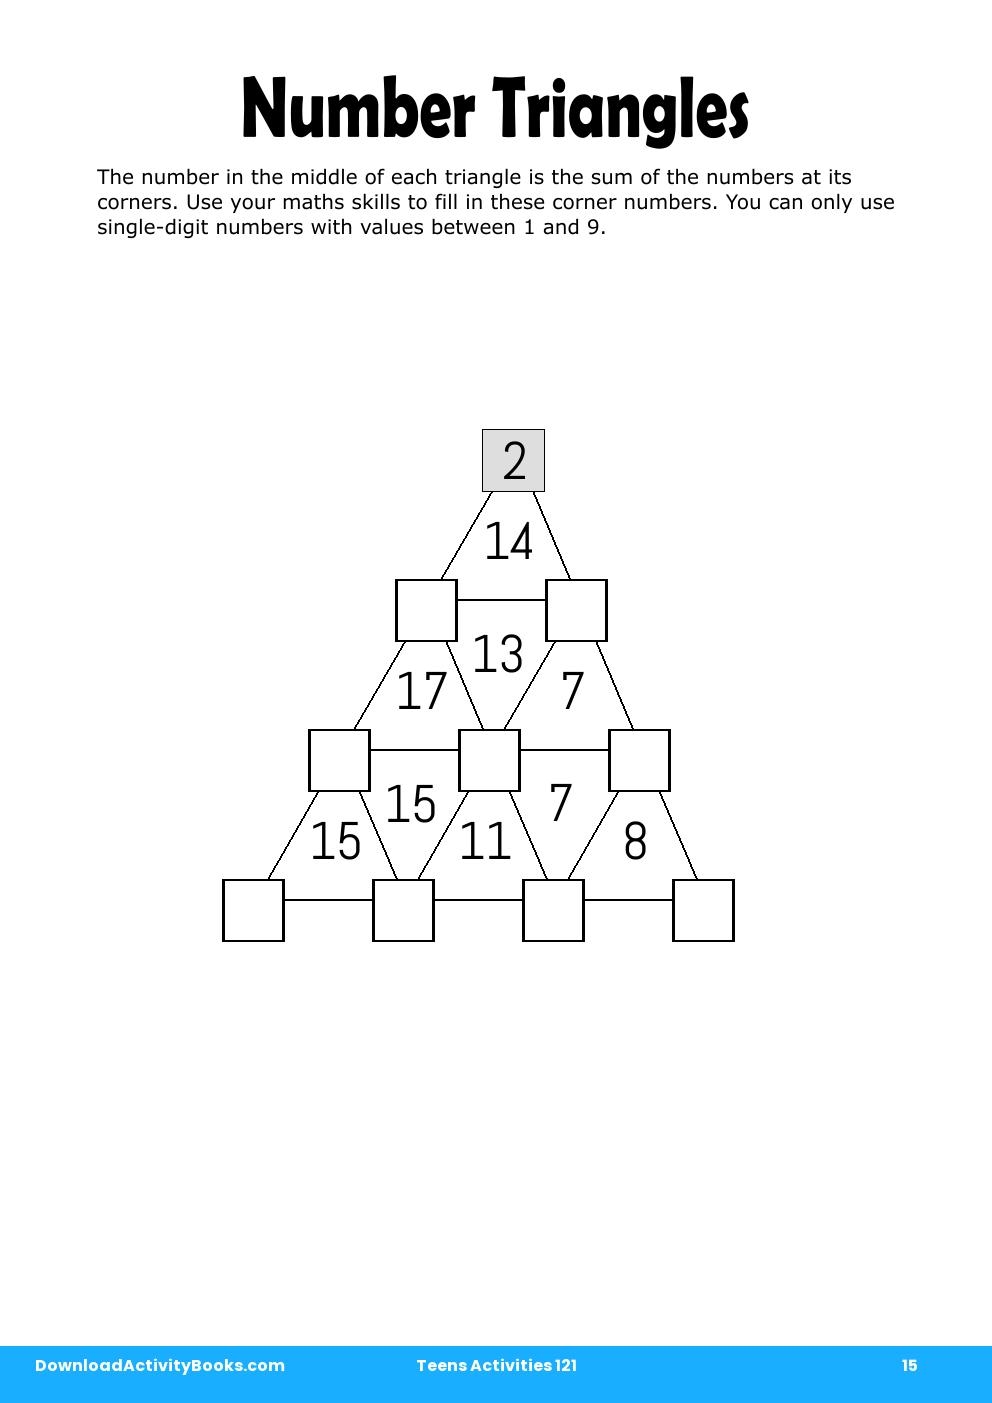 Number Triangles in Teens Activities 121